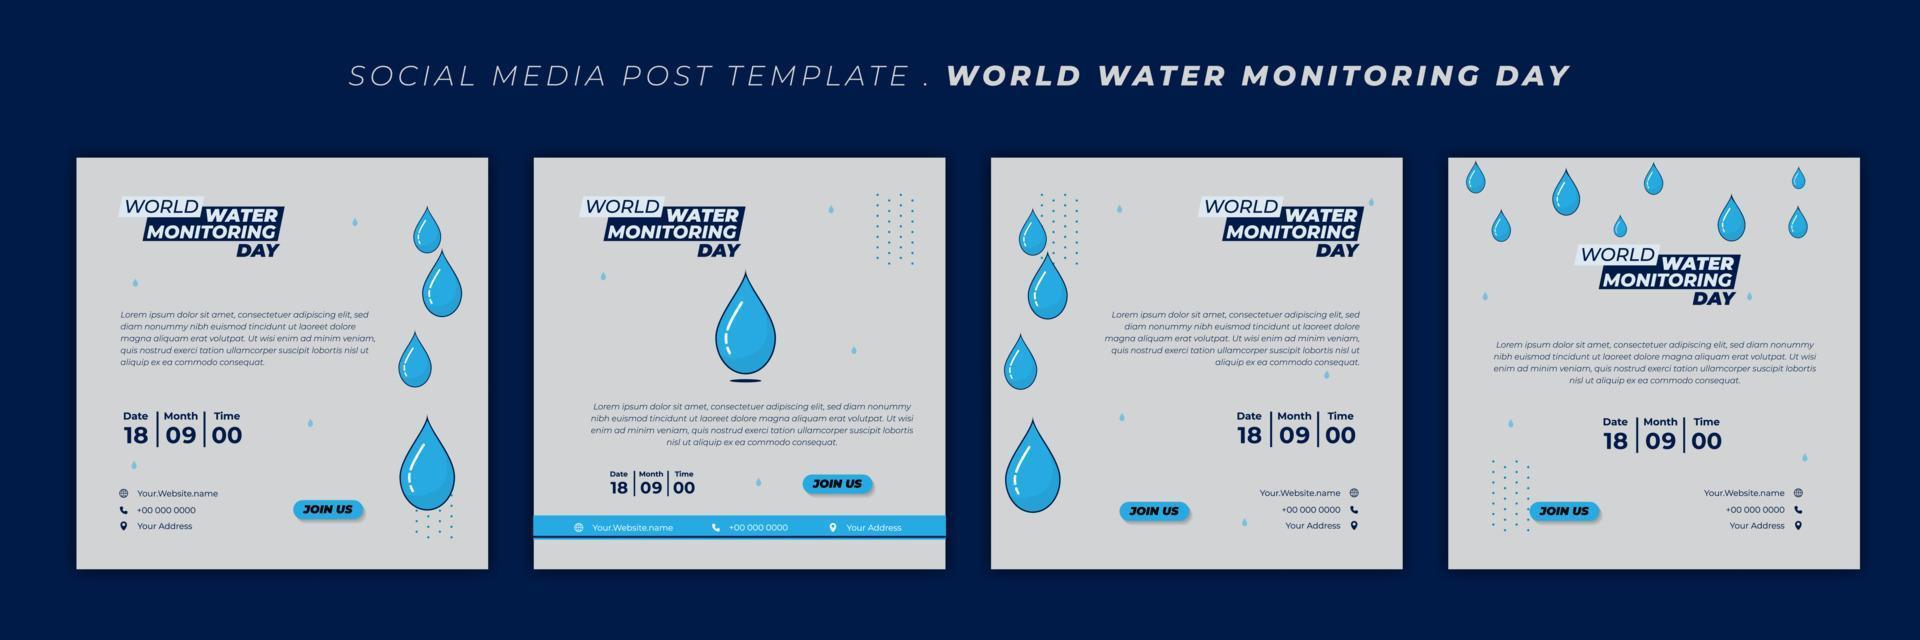 wereld water monitoring dag ontwerp met waterdruppels vectorillustratie. set van sociale media-sjabloon met blauw en wit ontwerp. vector